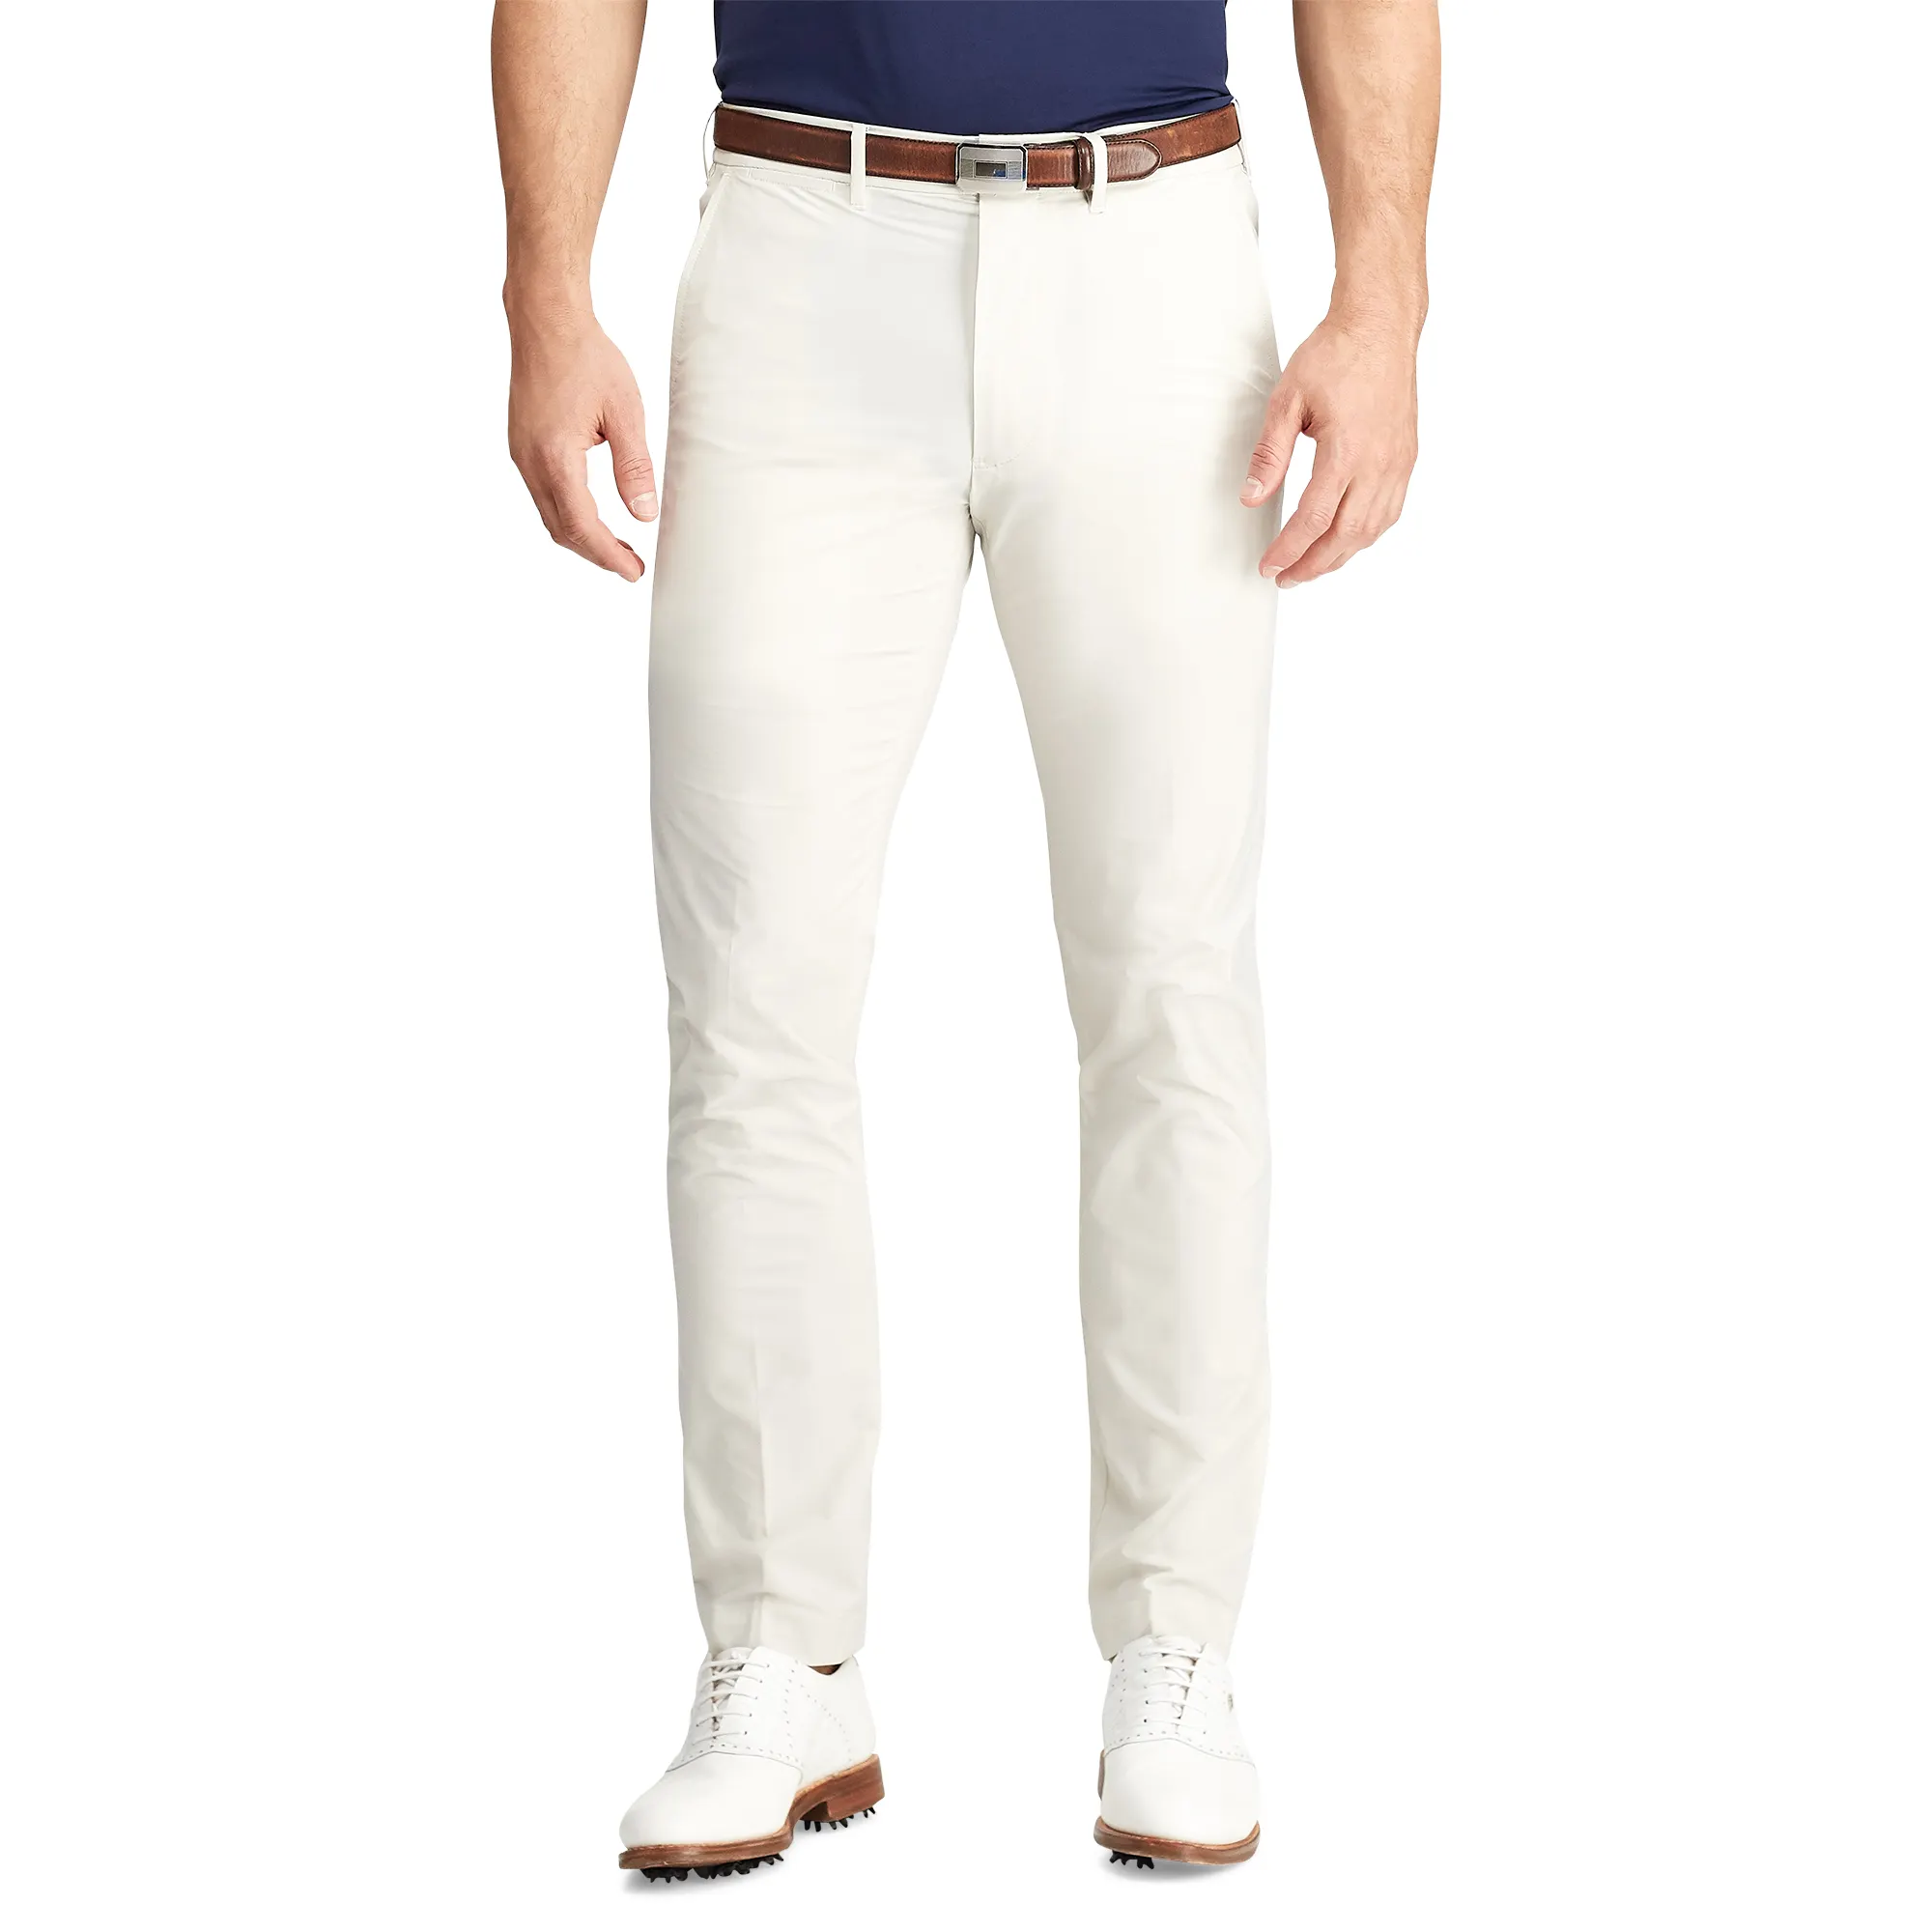 Pantalones de Golf elásticos para hombre, pantalones de Golf elásticos, ajustados y secos, color blanco y negro, Oem, venta al por mayor